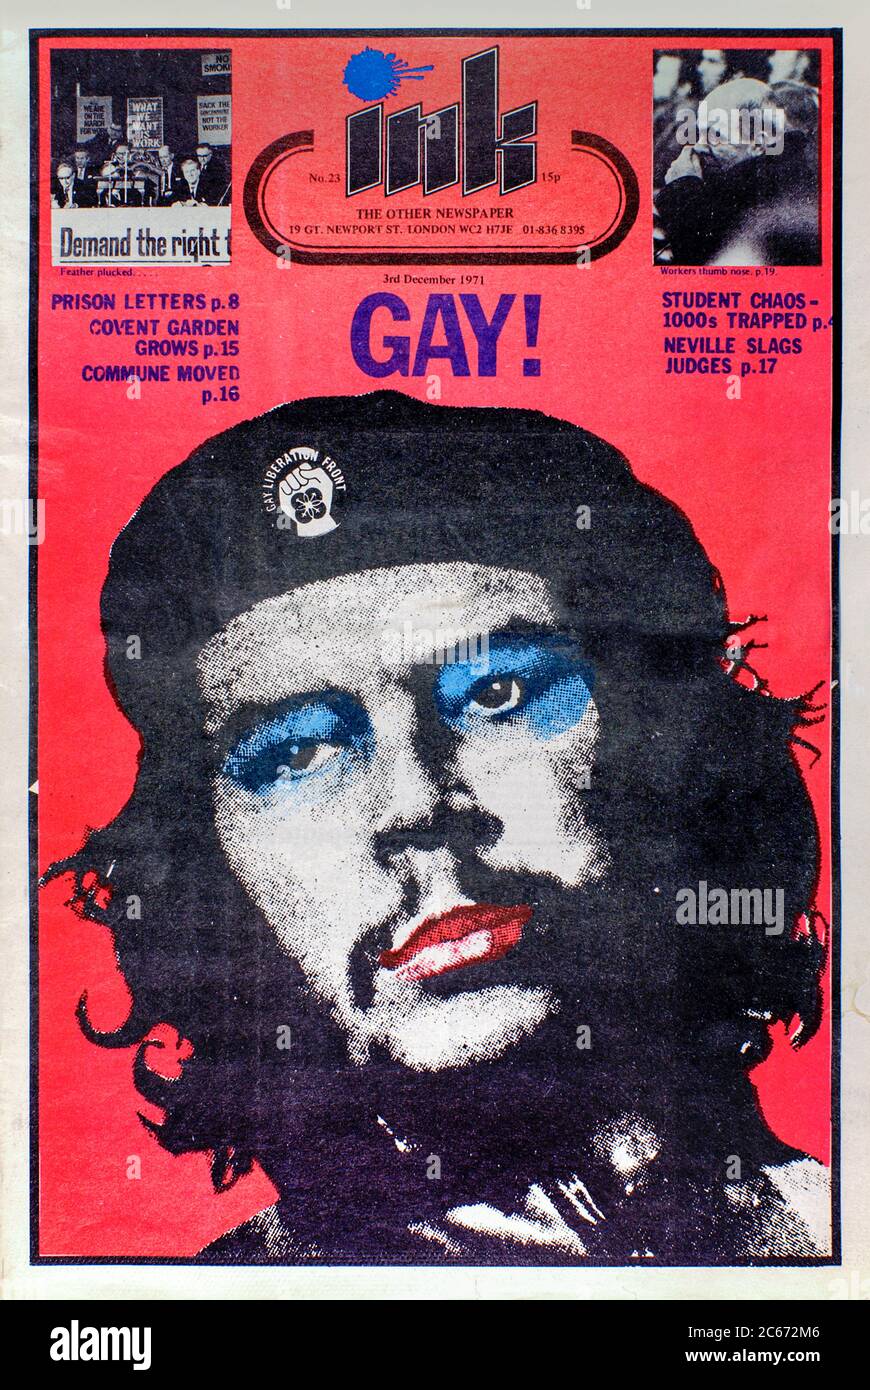 Frontcover von Ink #23 veröffentlicht am 3. Dezember 1971 mit einem Foto von Che Guevara trägt Make-up und ein Gay Liberation Front Abzeichen auf seiner Baskenmütze. Ink Magazine die andere Zeitung war ein Underground im Dienste der Homosexuell Gemeinschaft von Richard Neville im Mai 1971 gegründet. Stockfoto